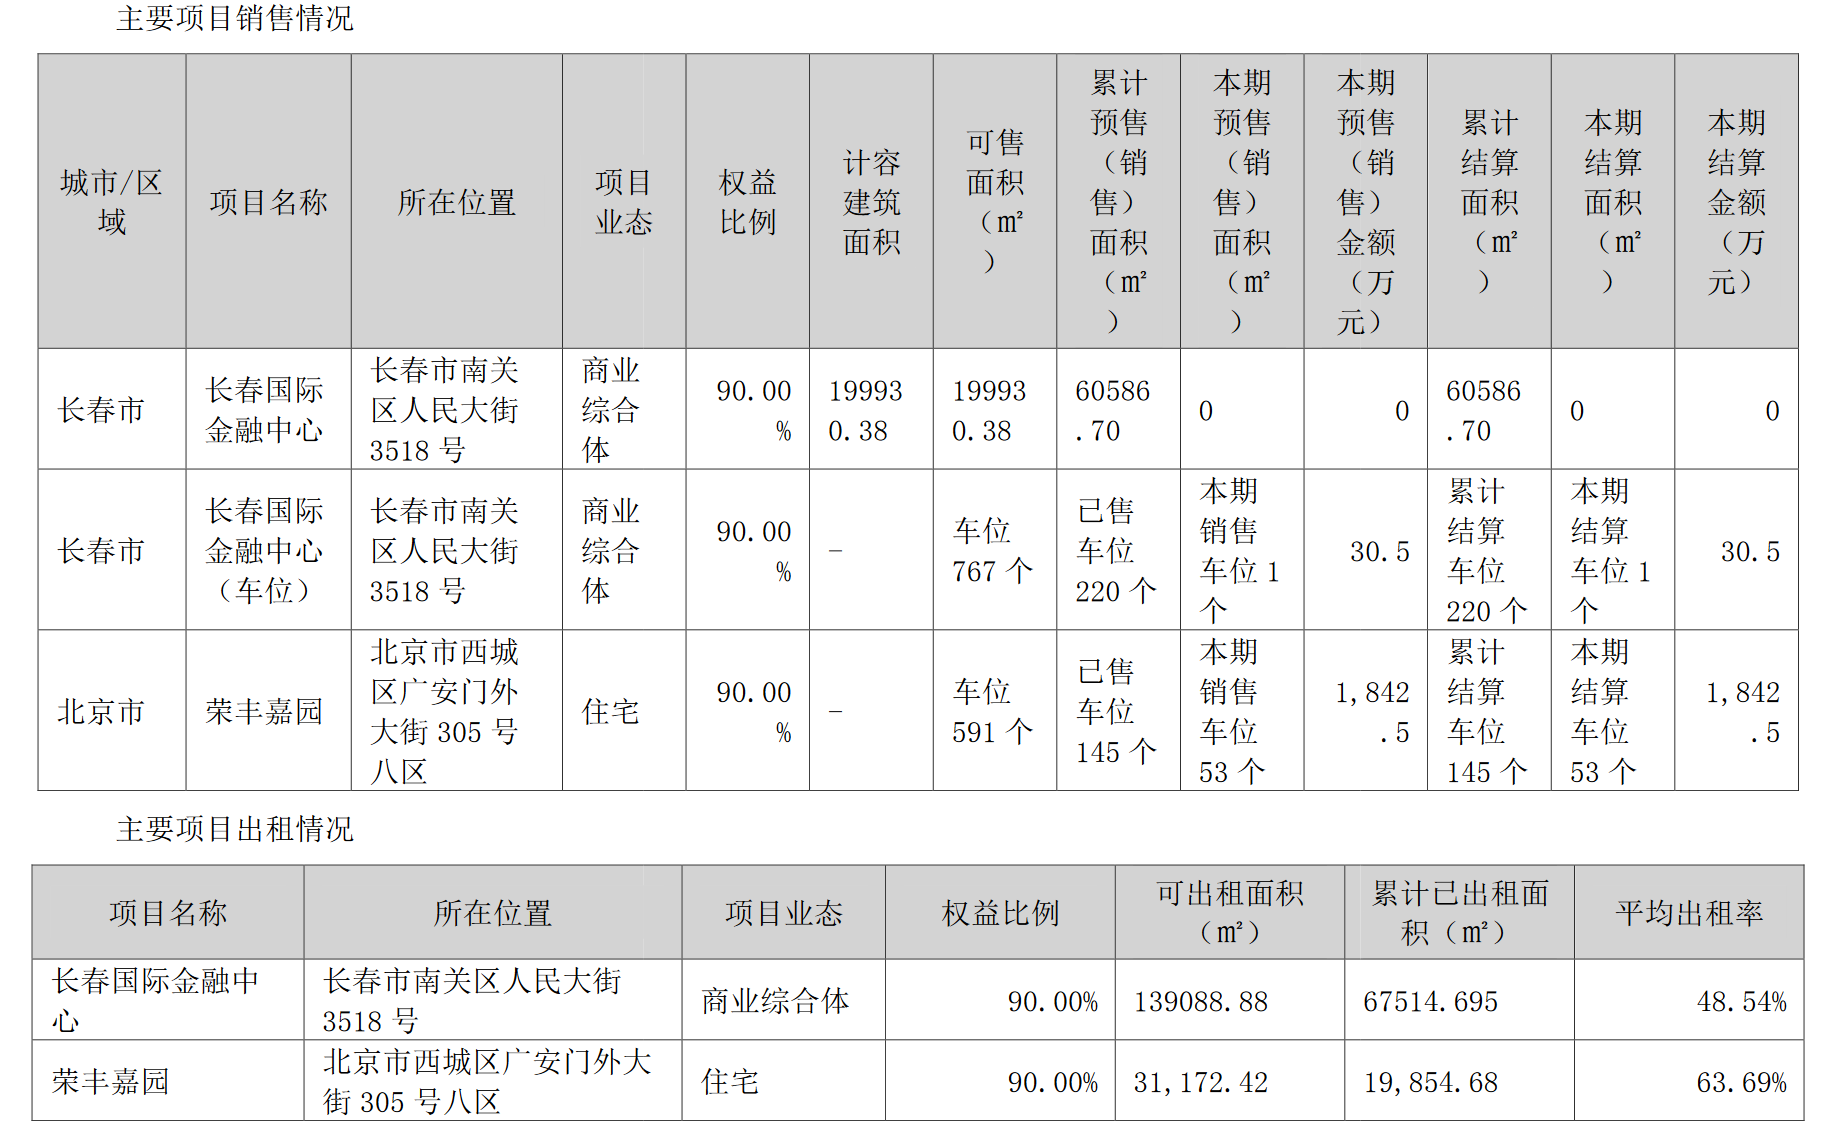 上前未见光明丨荣丰控股白鱼出售威宇医疗33.74%股权 重返房地产开发主业_中国网地产